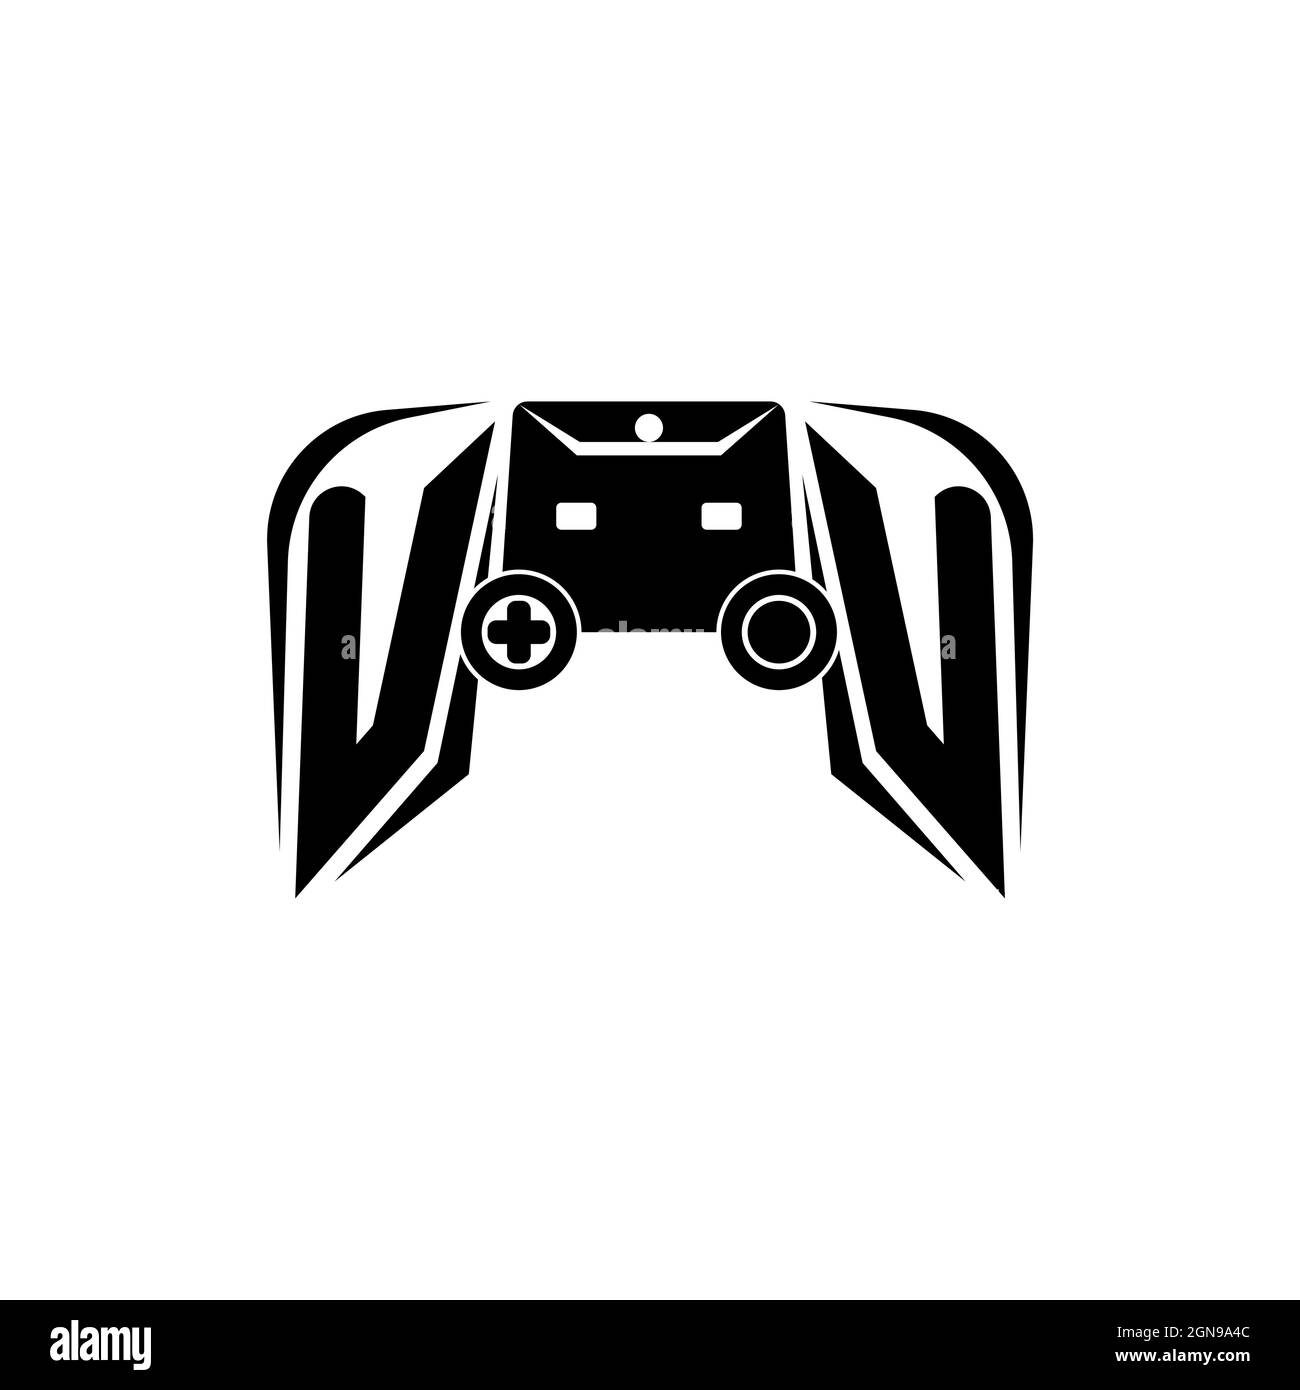 Download Gaming Logo Art Royalty-Free Stock Illustration Image